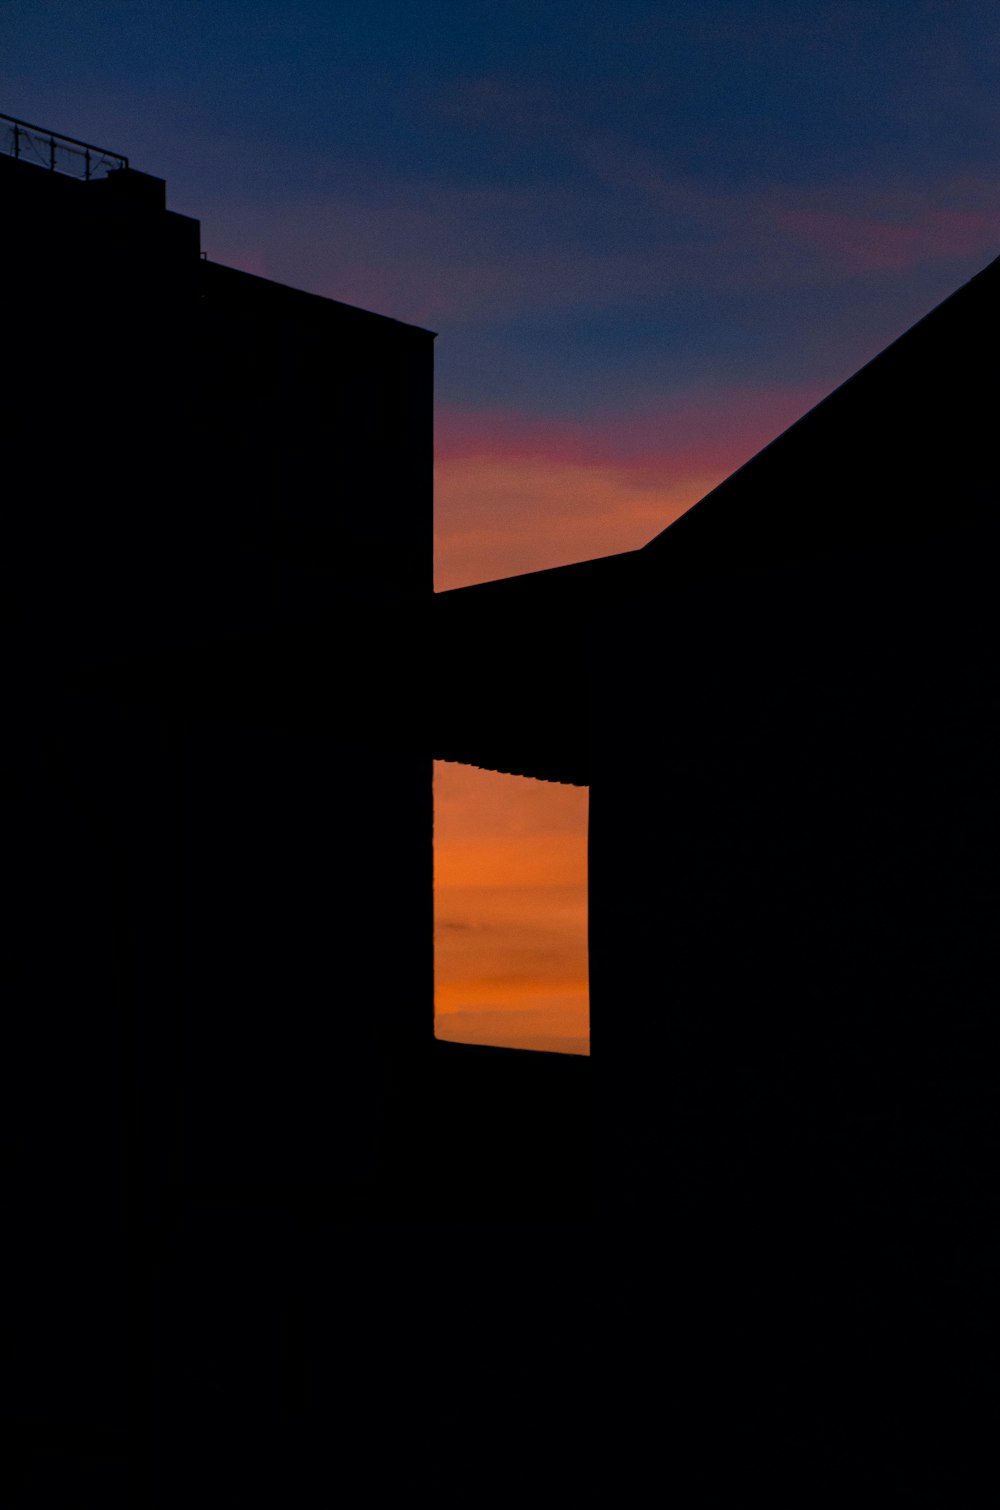 La silueta de dos edificios contra una puesta de sol